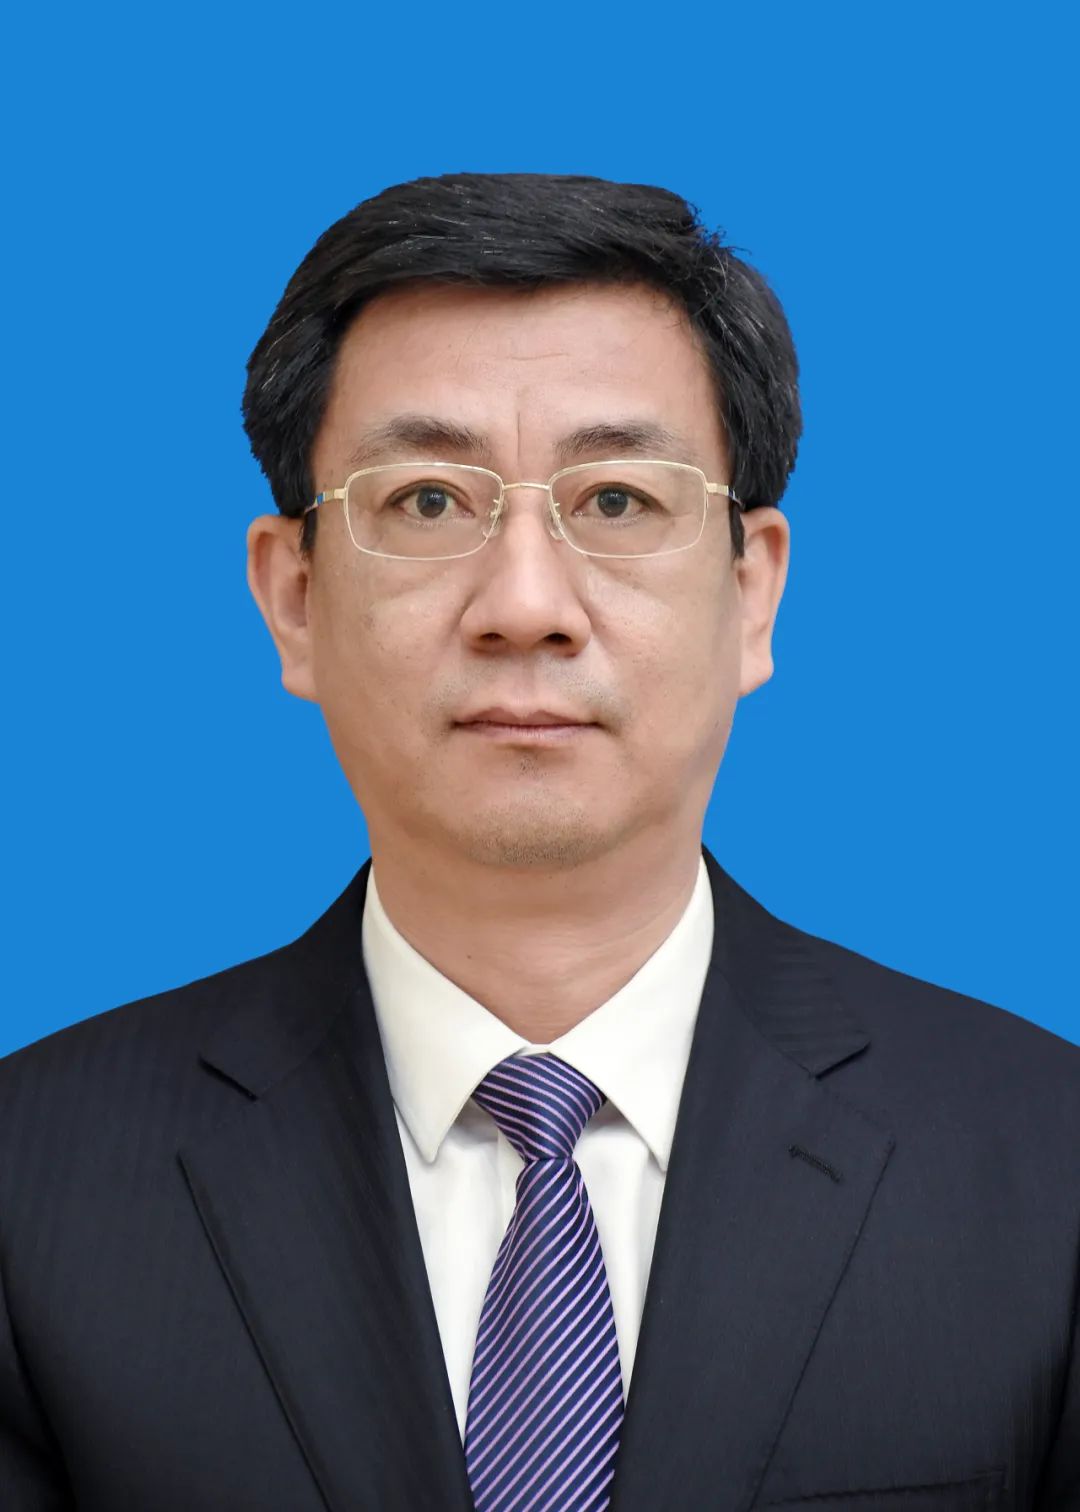 市人民政府副市长 林斌林斌,男,汉族,1971年2月生,大学,学士,民建会员